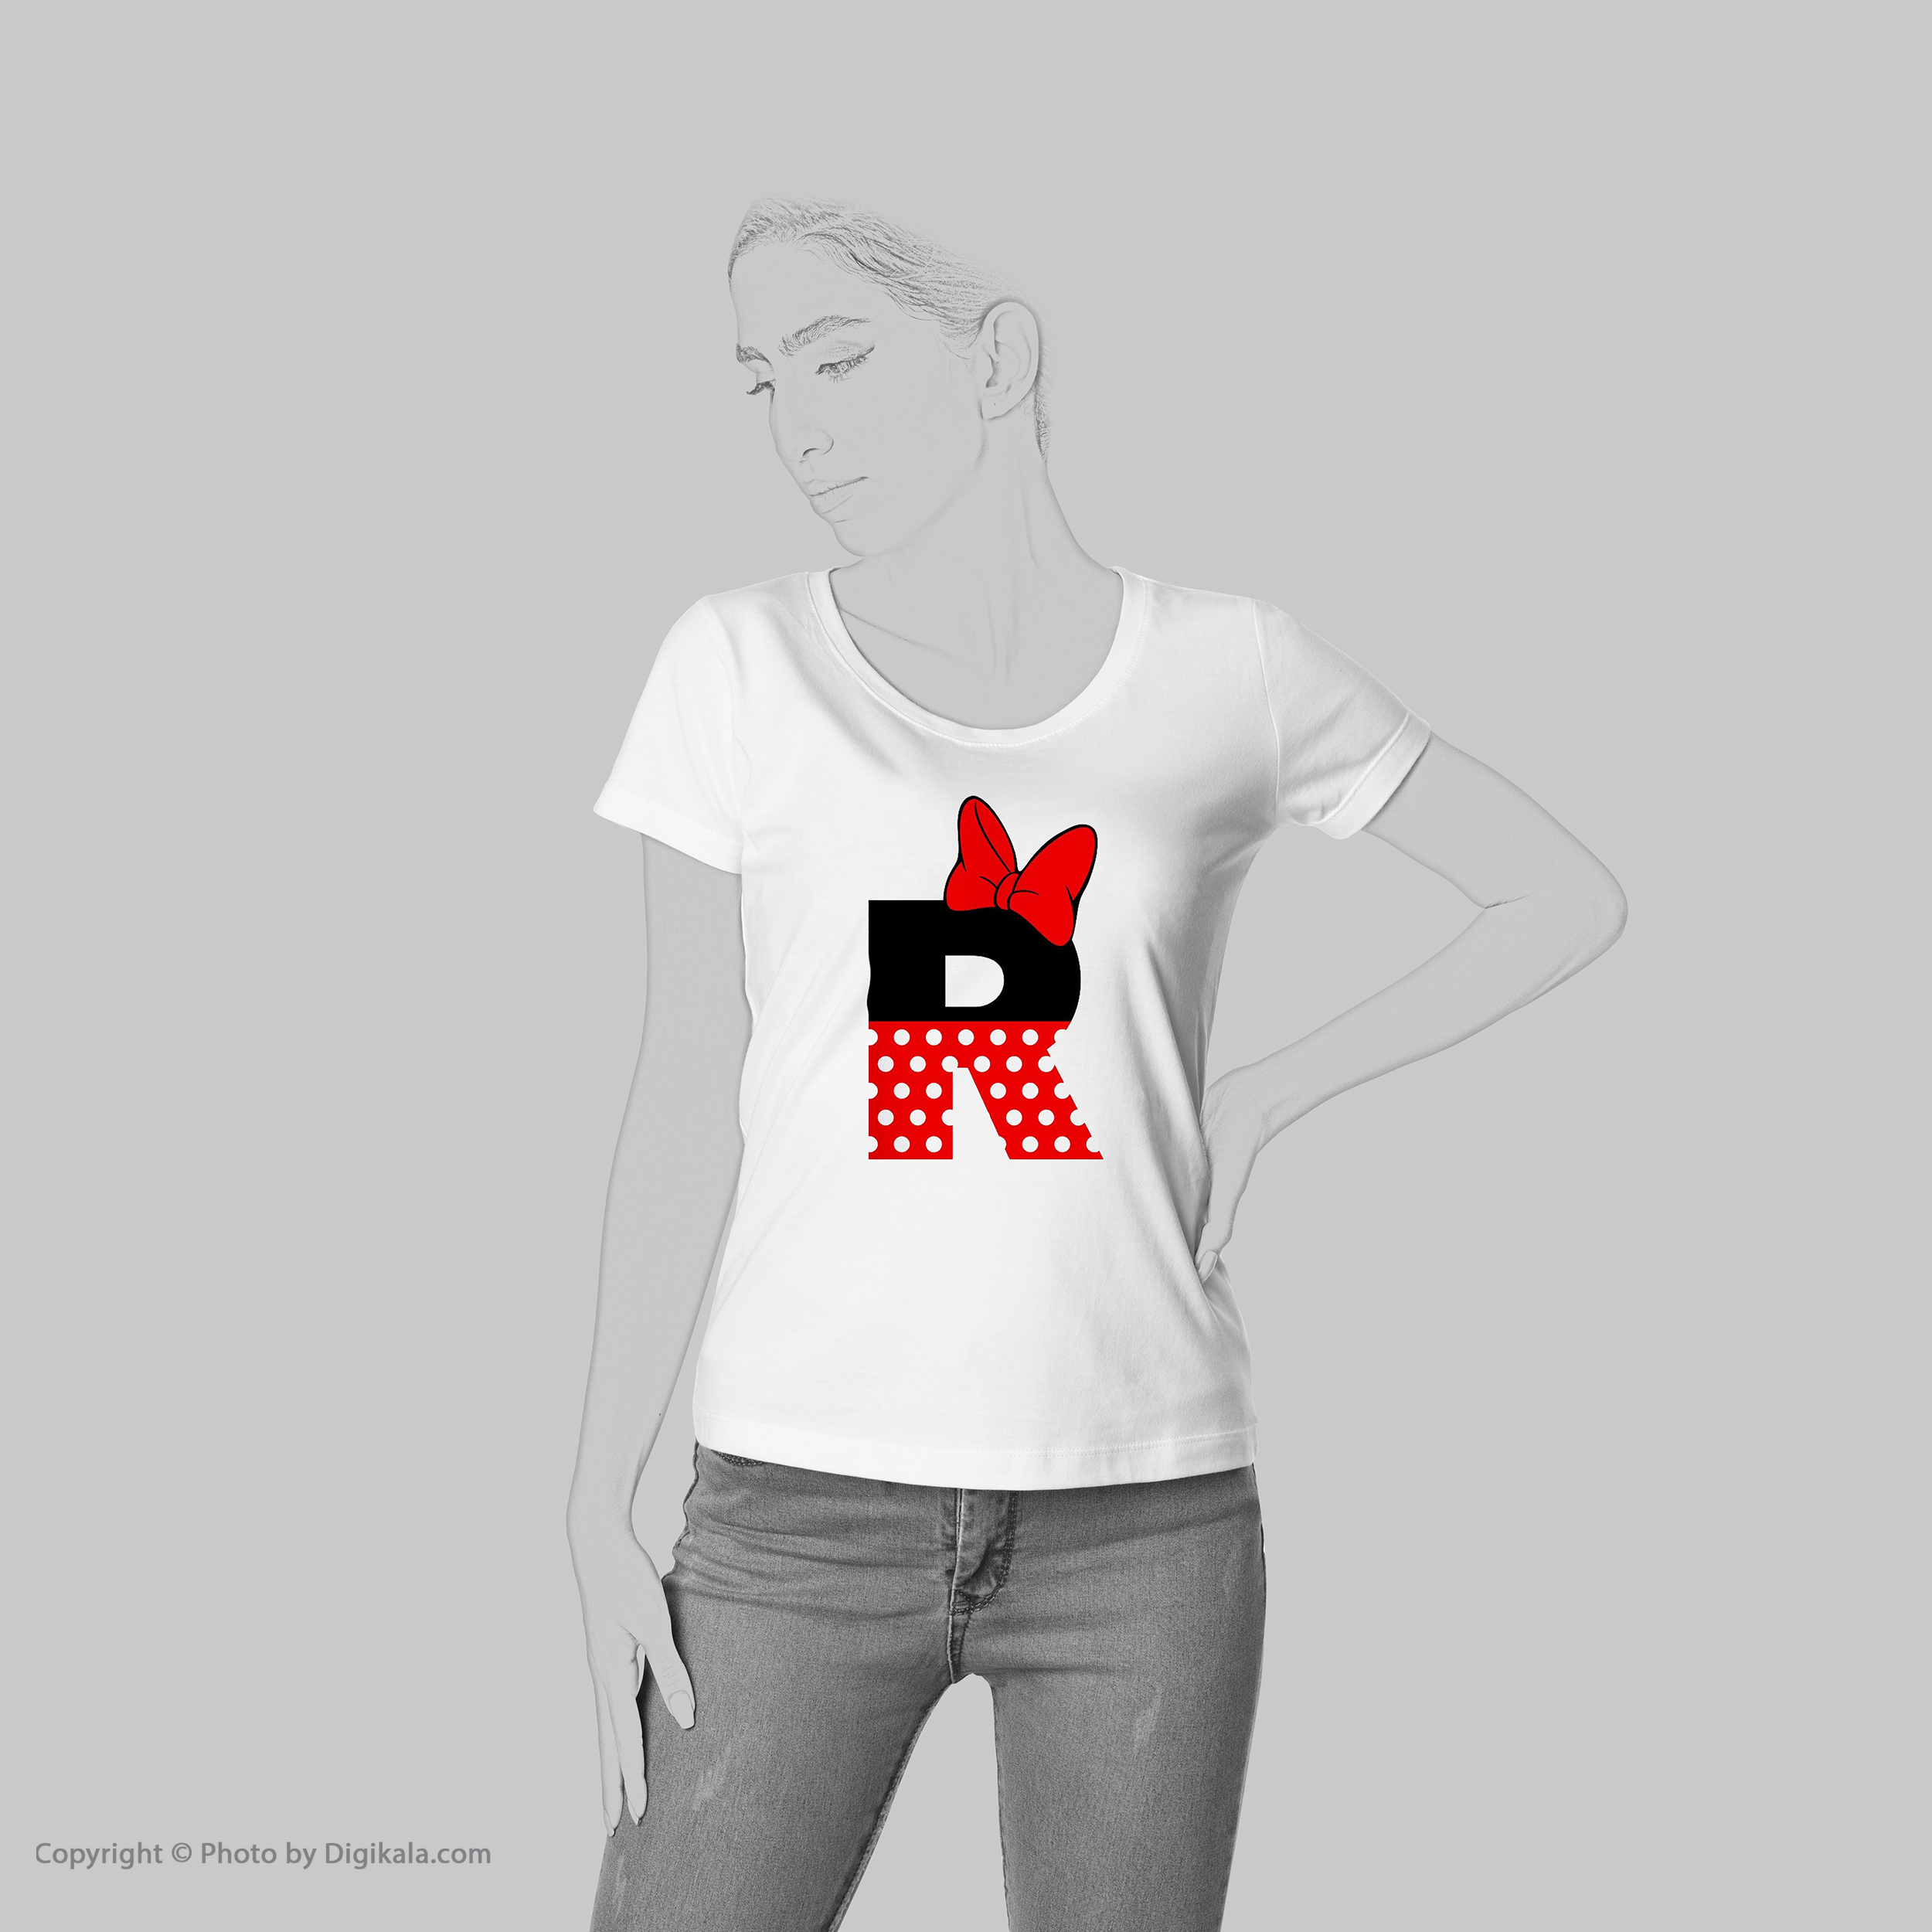 تی شرت آستین کوتاه زنانه شین دیزاین طرح میکی موس R کد 4533 -  - 2